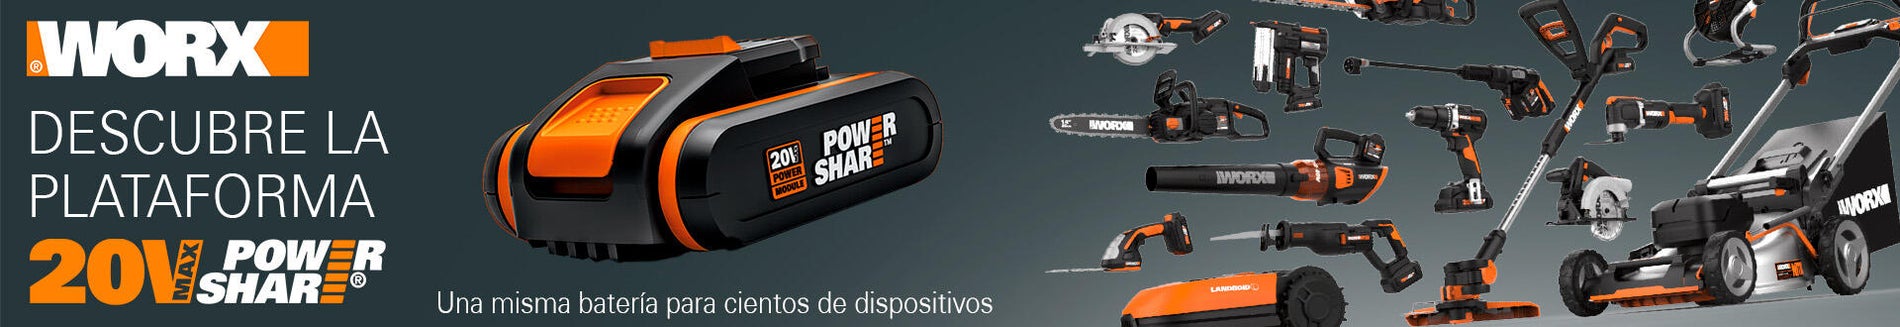 Worx WX390.1 H3 Martillo/Taladro/Atornillador + 2 Baterías 20V 2.0Ah +  Maletín